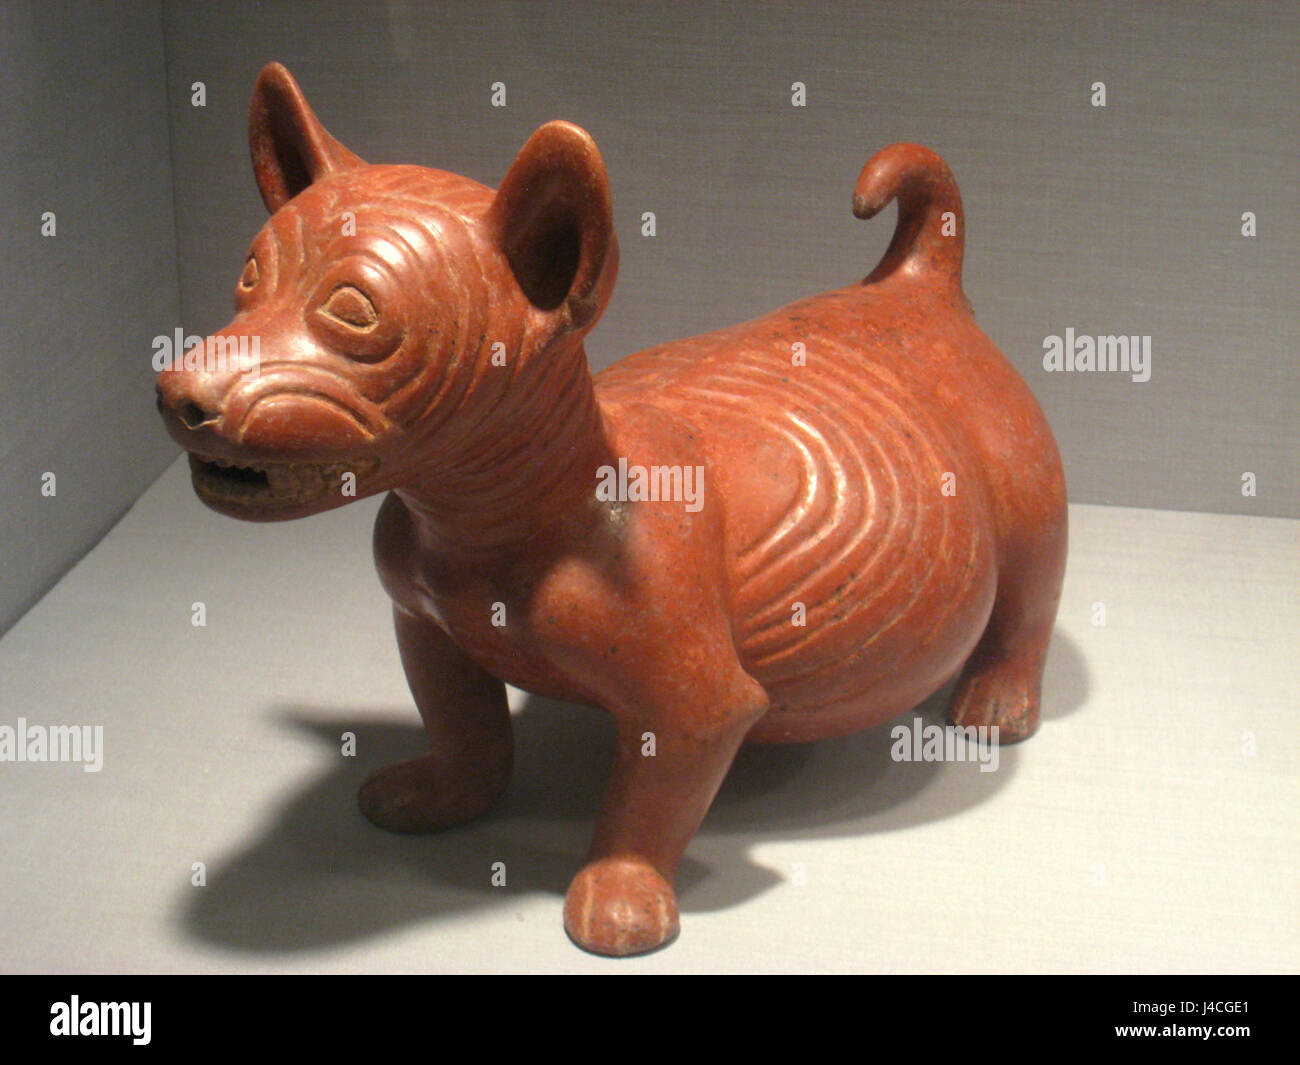 Pot perro curva figura, México, en el estado de Colima, 200 BC 500 AD,  cerámica, colección Precolombino, museo de arte de Worcester IMG 7646  Fotografía de stock - Alamy